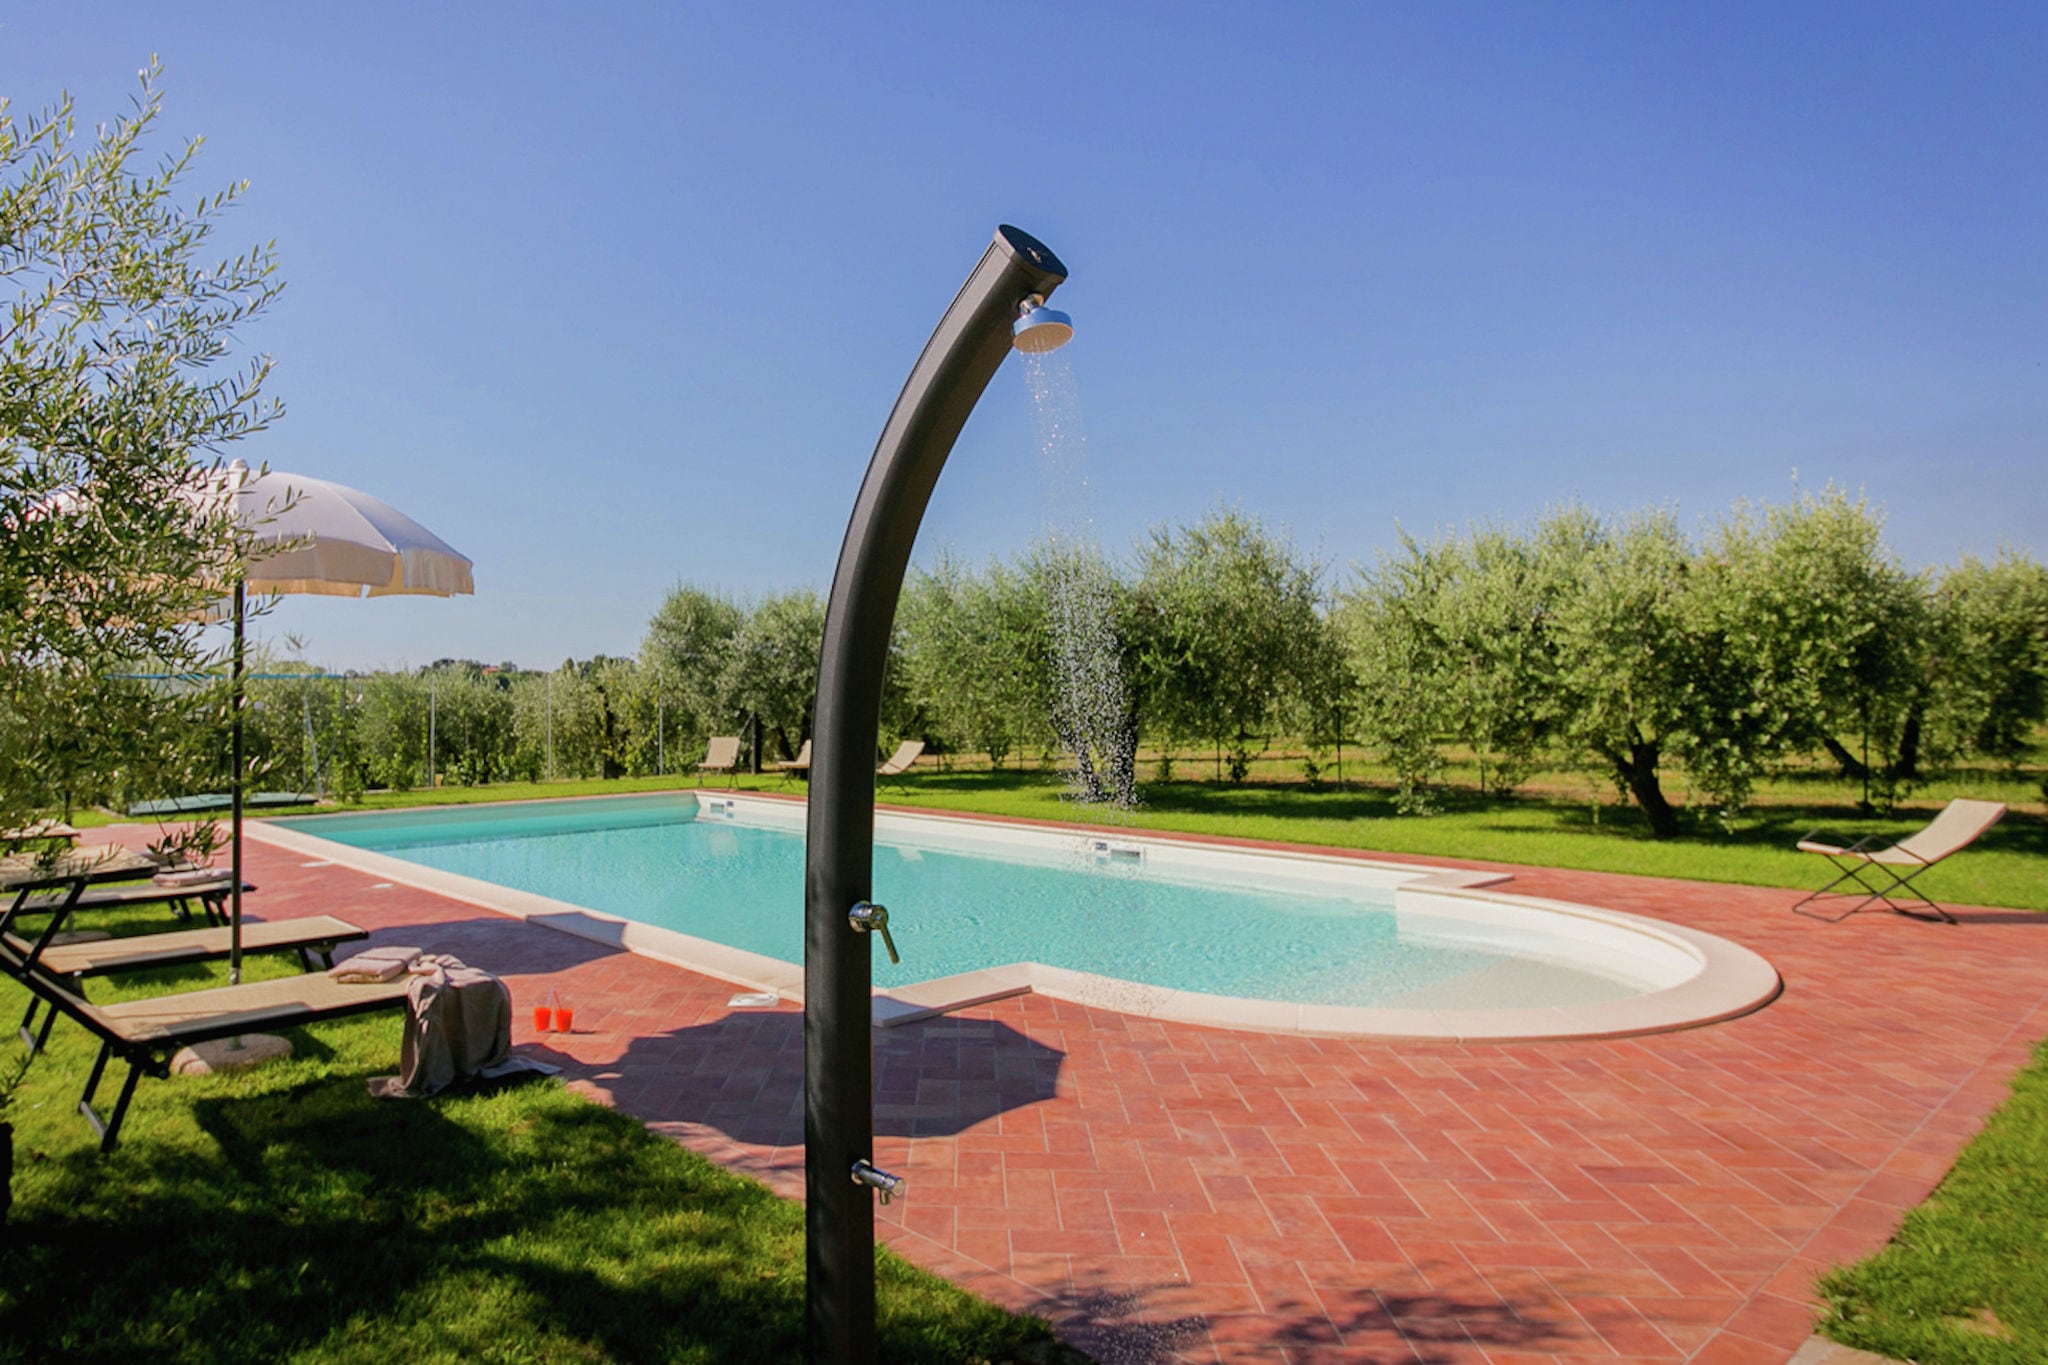 Malerische Villa in Cortona mit Pool